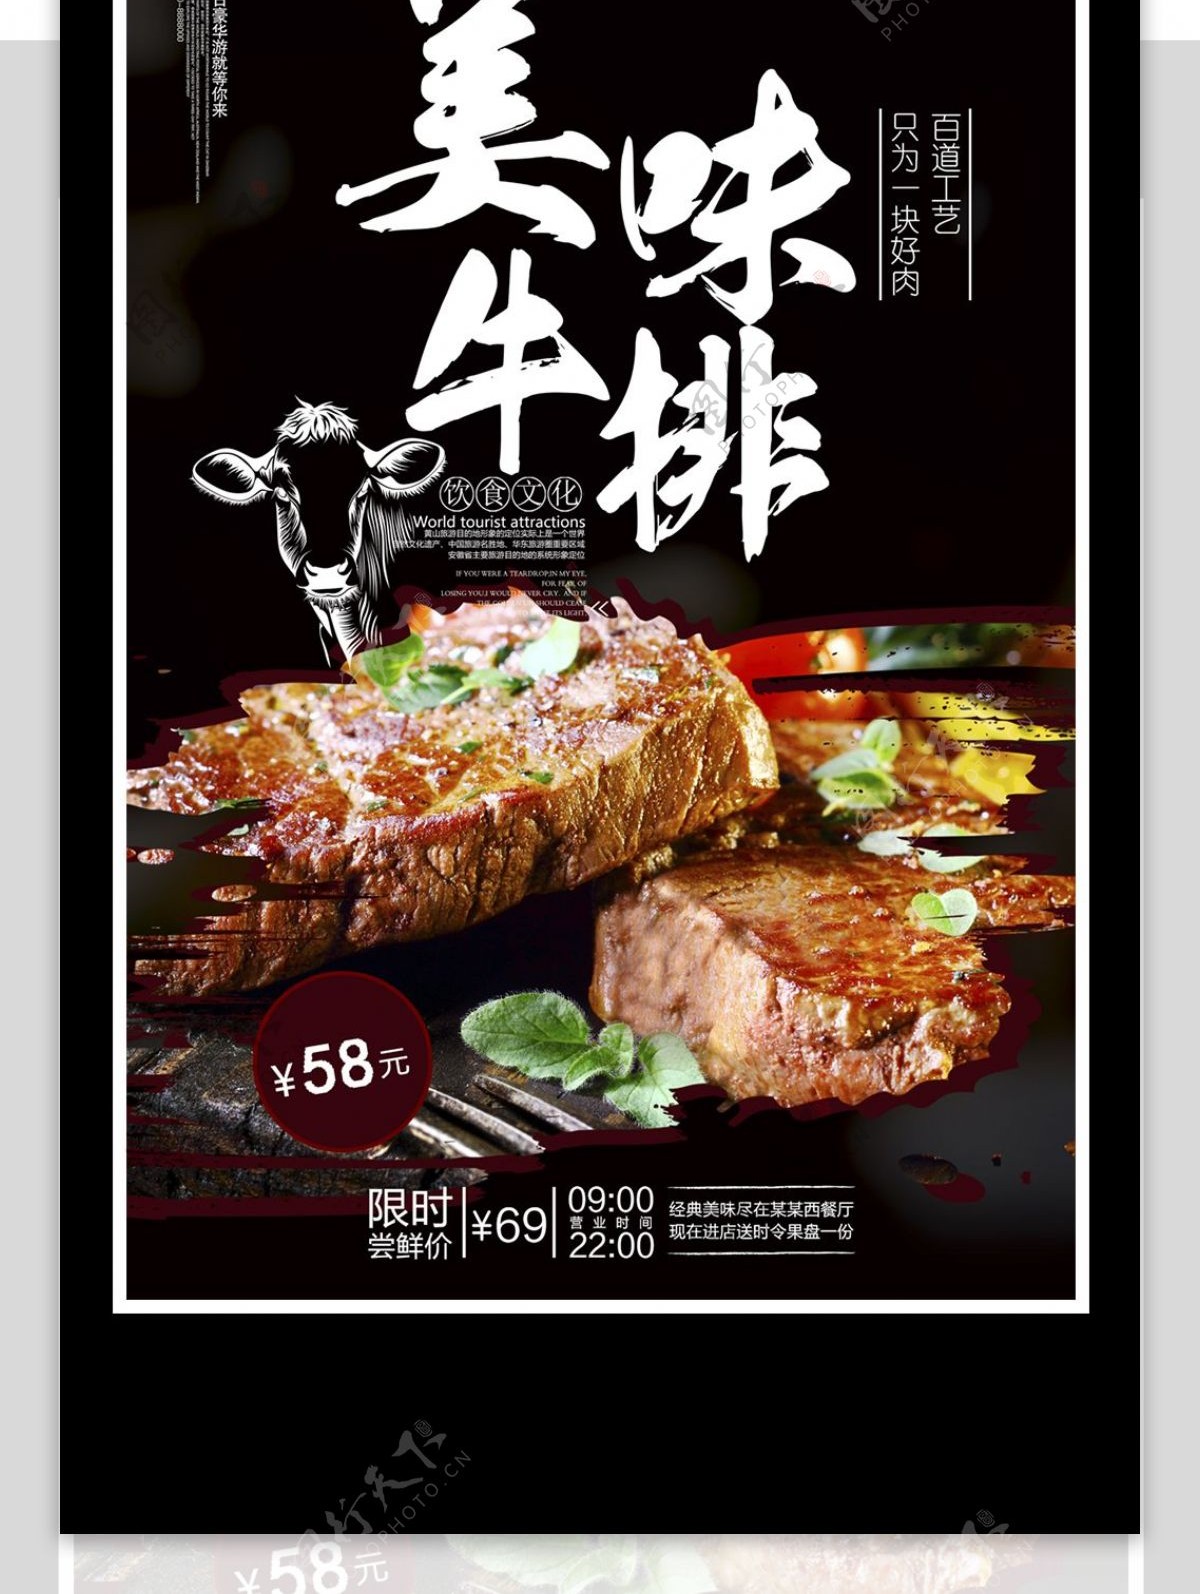 创意美味牛排美食宣传海报设计